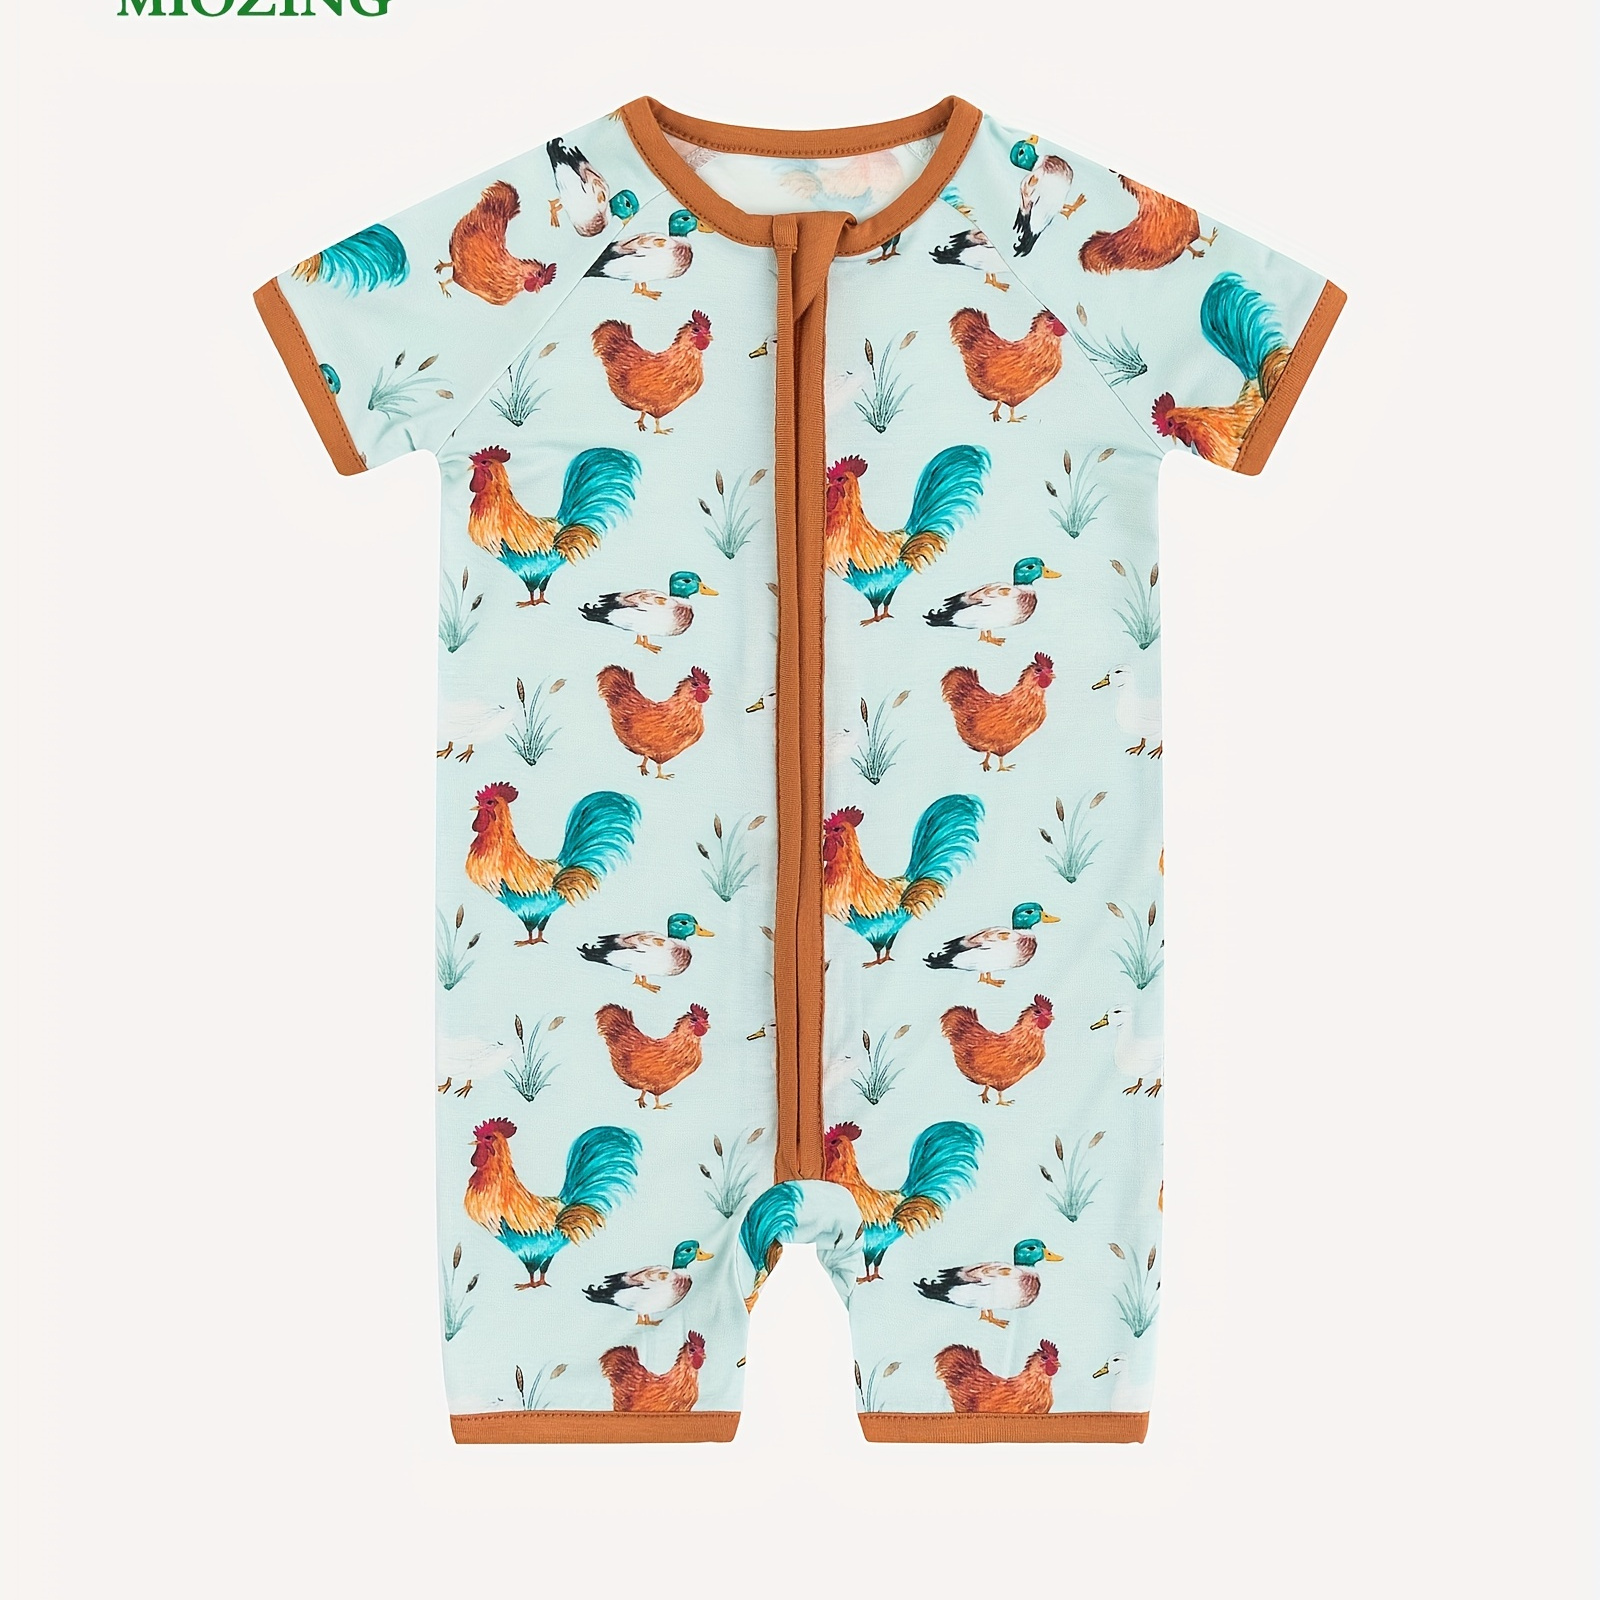 

Miozing Bamboo Fiber Bodysuit For Baby, Chicken & Hen Pattern Short Sleeve Onesie, Infant & Toddler Girl's Romper